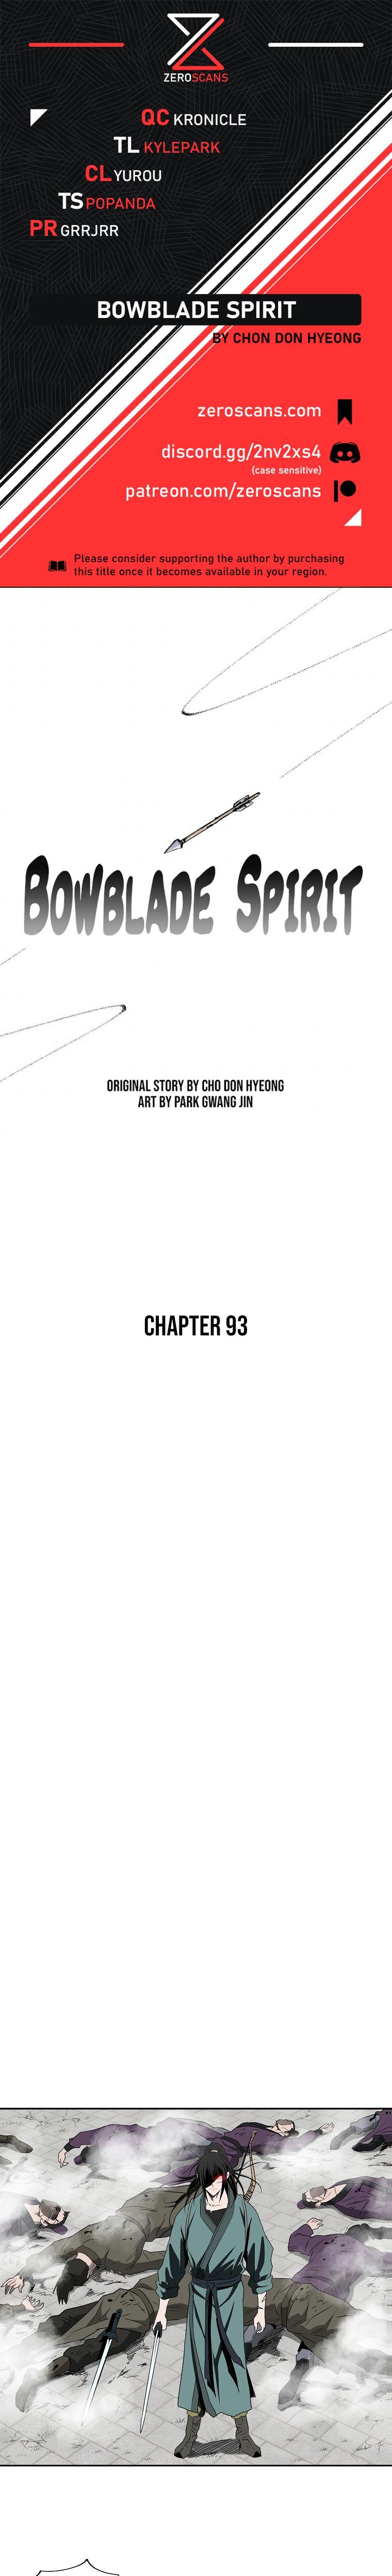 Bowblade Spirit - Chapter 8567 - Image 1